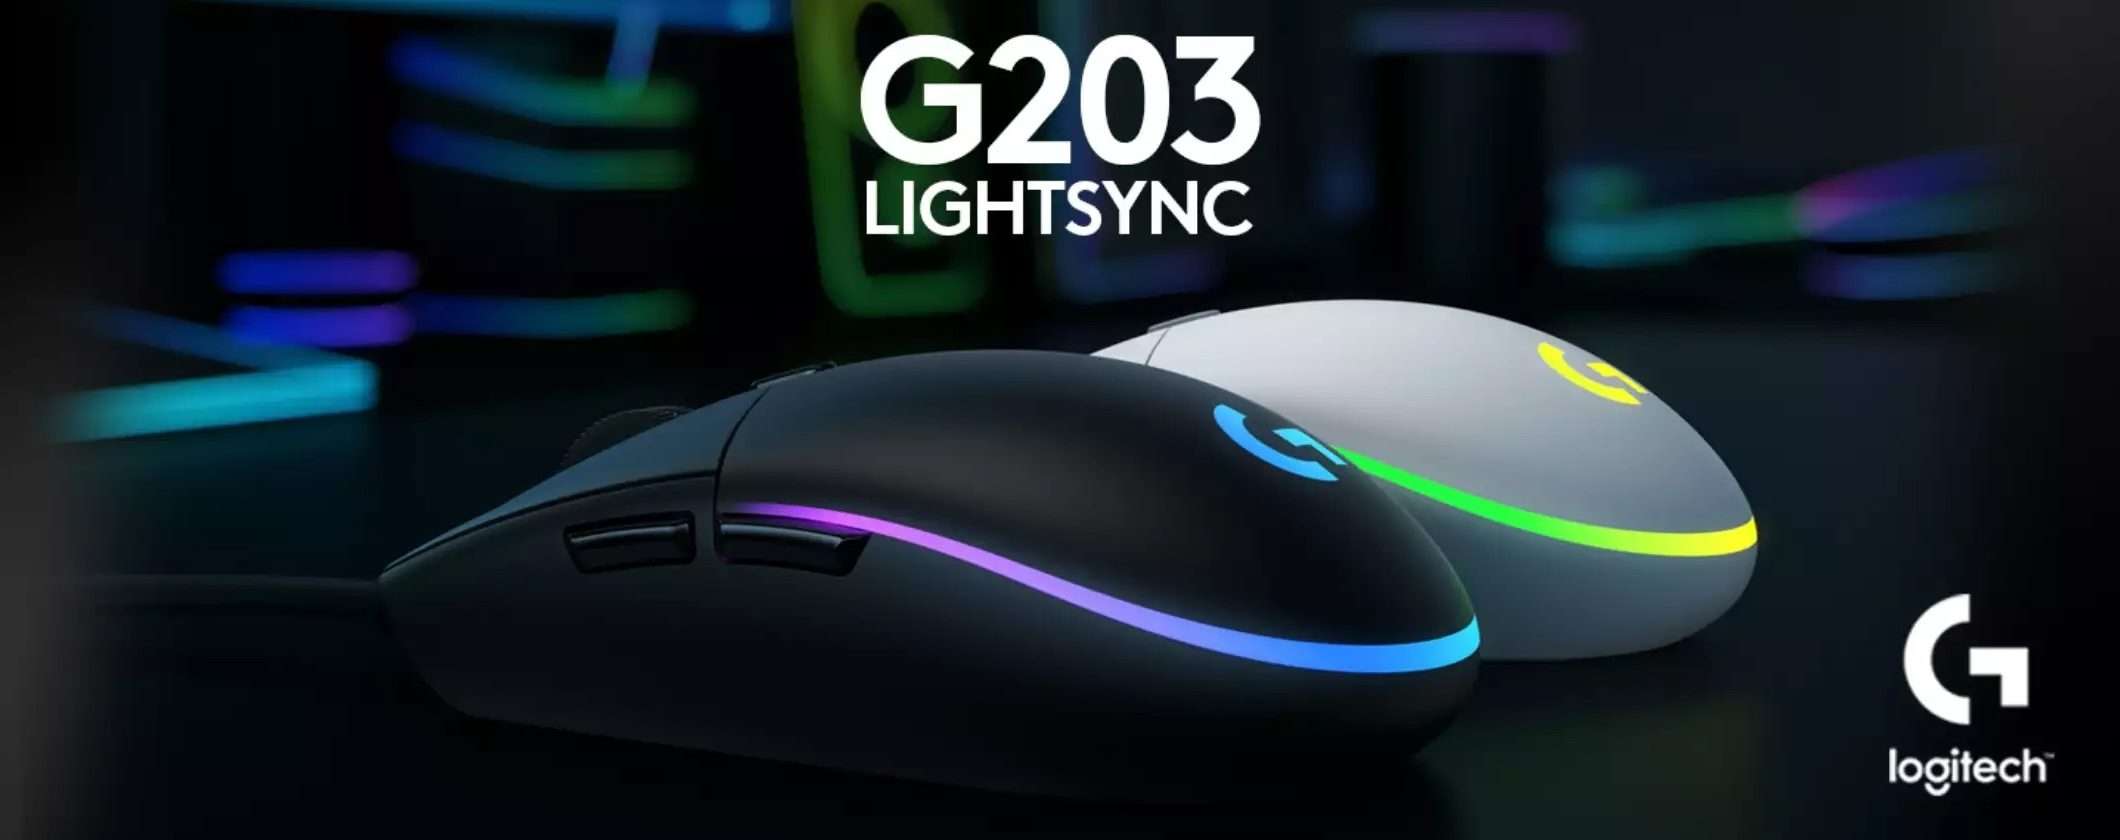 Mouse Logitech G203 LIGHTSYNC: la promozione di Amazon è ASSURDA